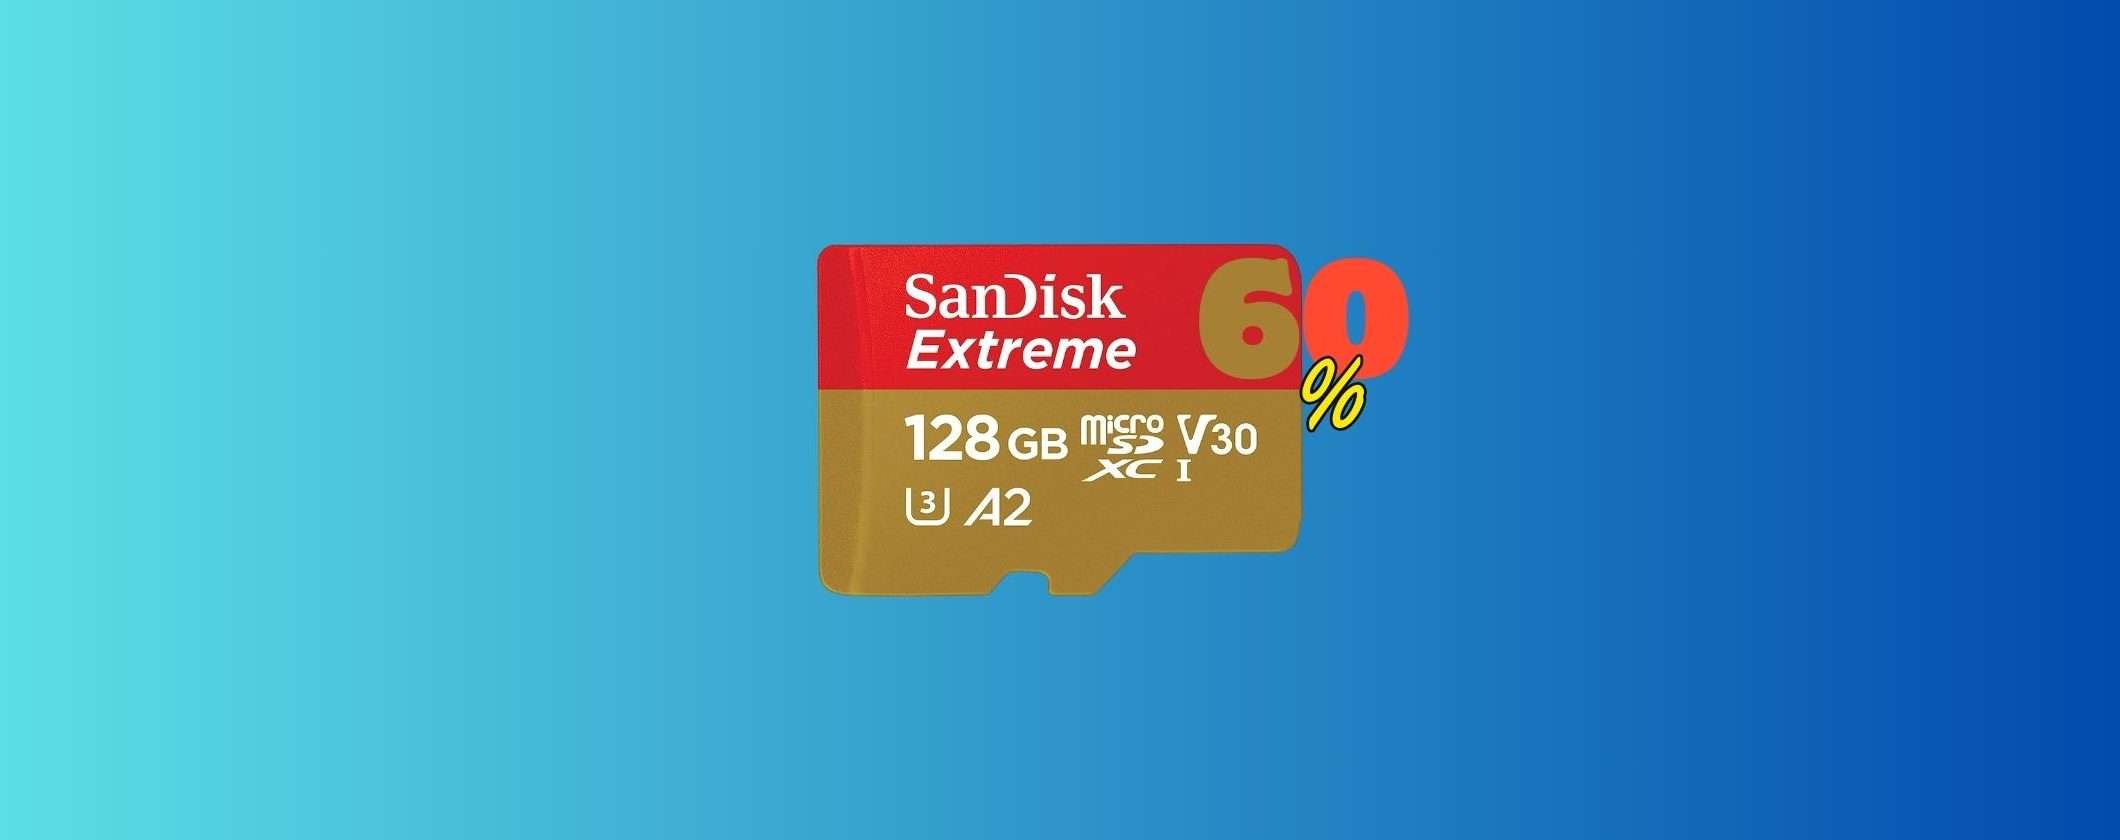 MicroSD SanDisk 128GB al 60% di SCONTO: dove acquistarla